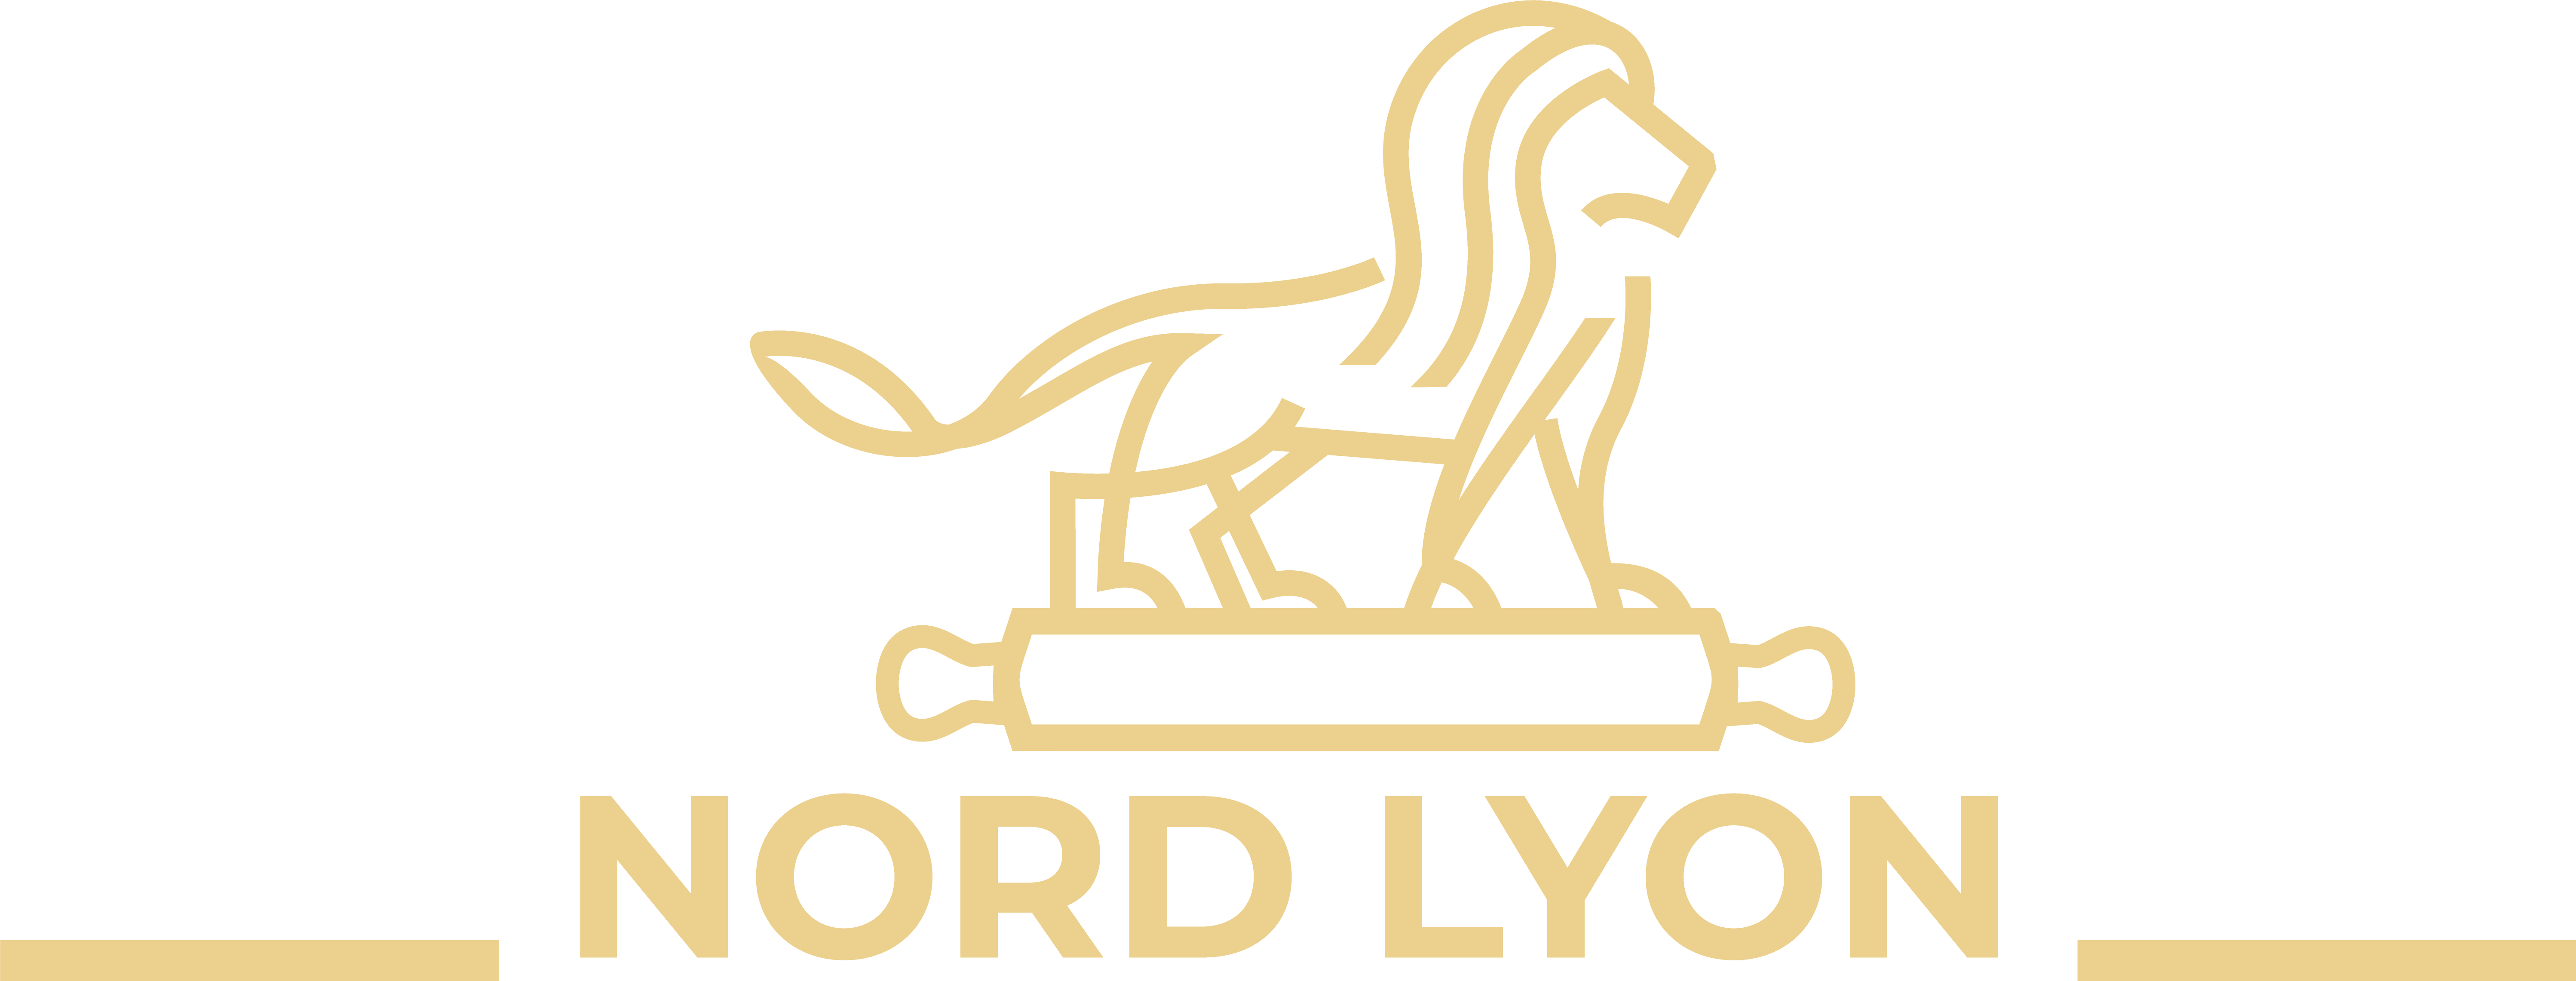 Nord Lyon